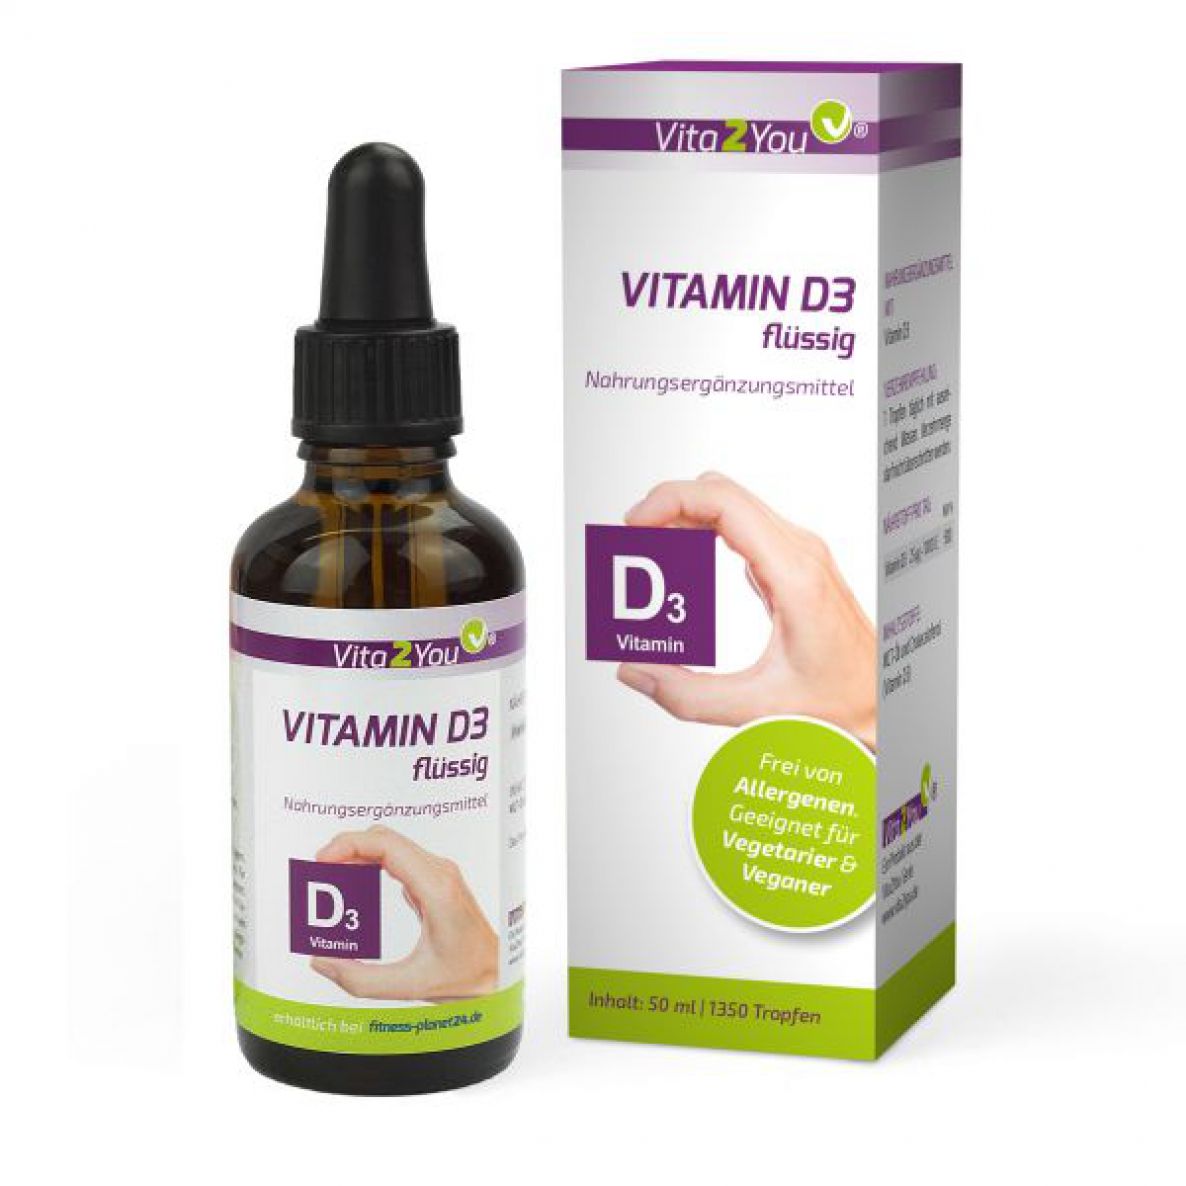 Vitamin D3 flüssig